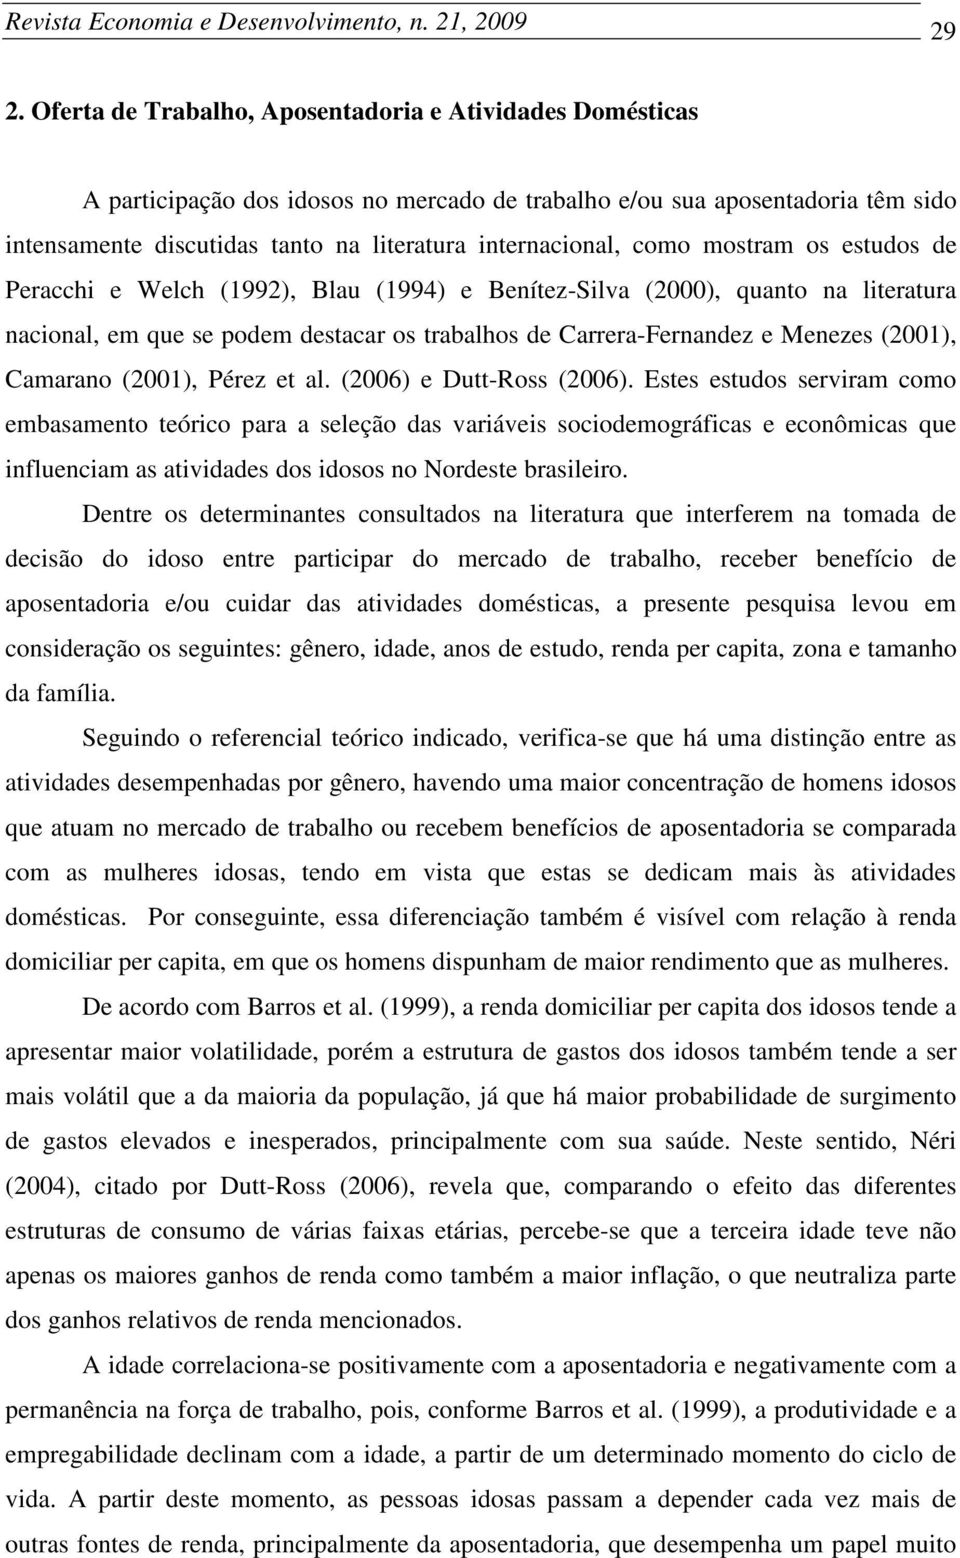 estudos de Peracch e Welch (1992), Blau (1994) e Benítez-Slva (2000), quanto na lteratura naconal, em que se podem destacar os trabalhos de Carrera-Fernandez e Menezes (2001), Camarano (2001), Pérez